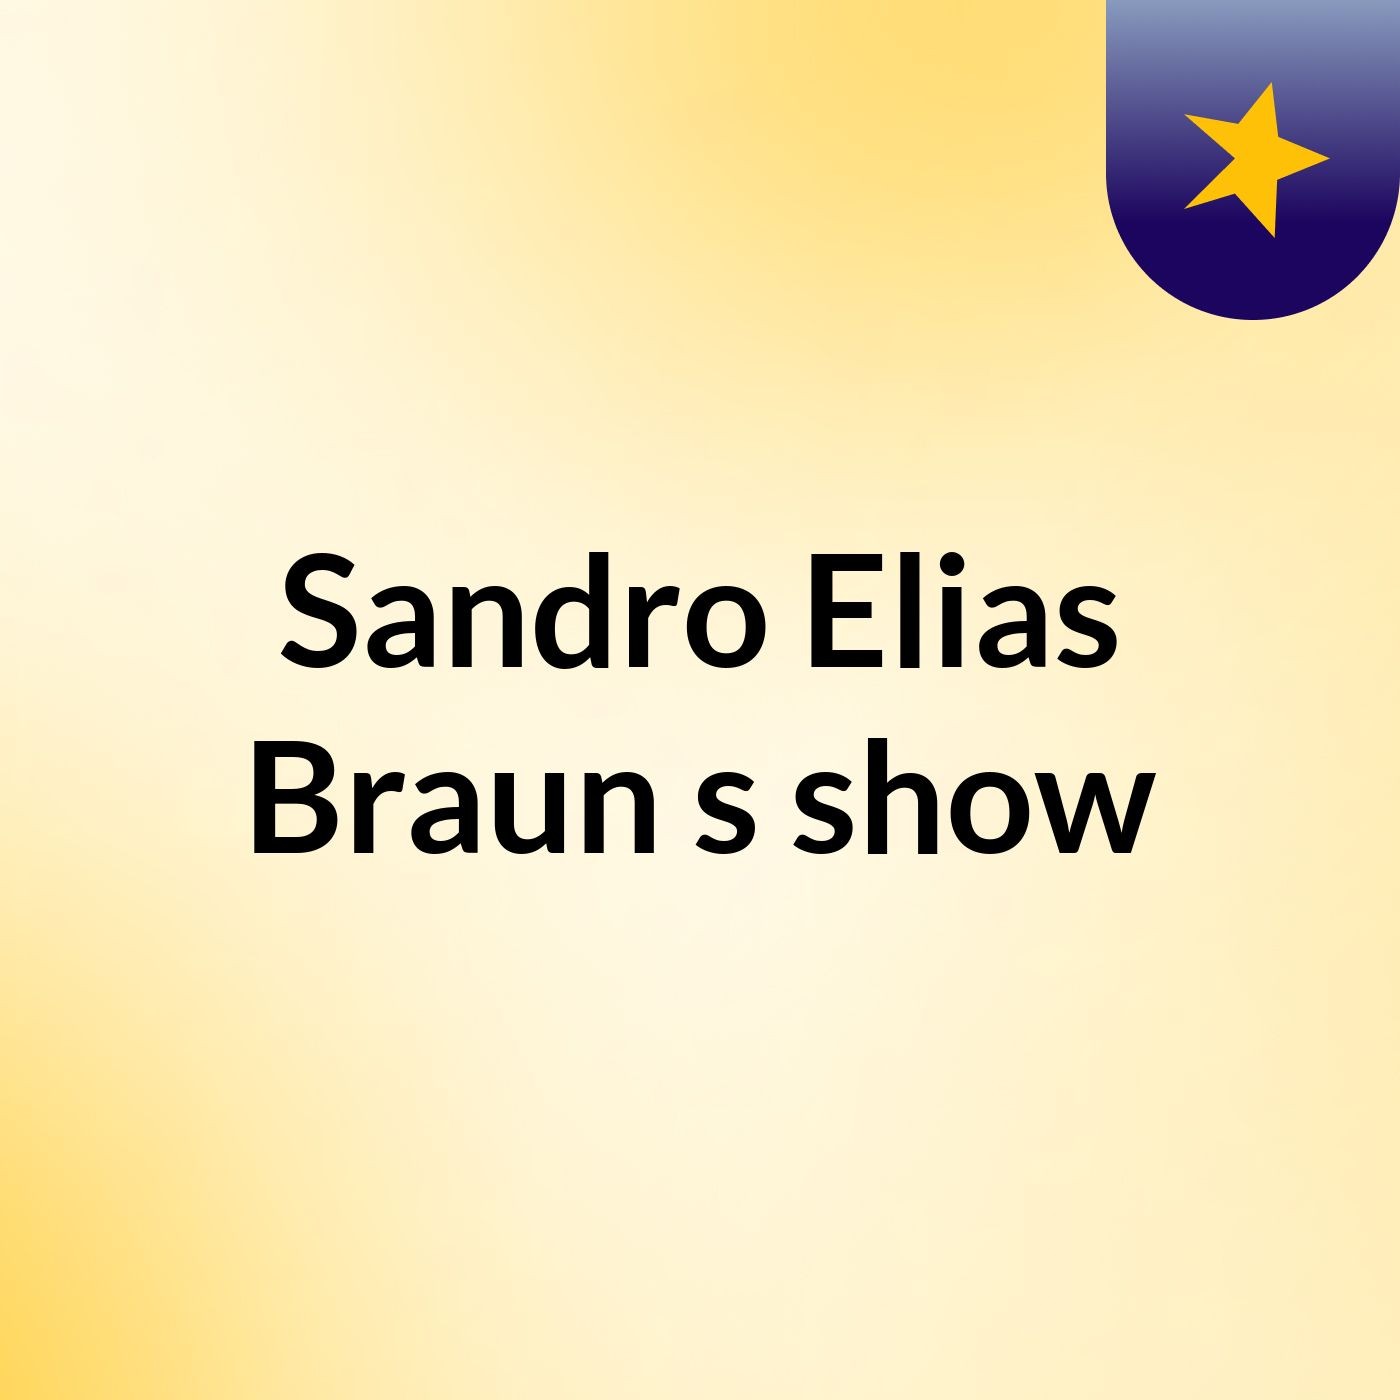 Sandro Elias Braun's show